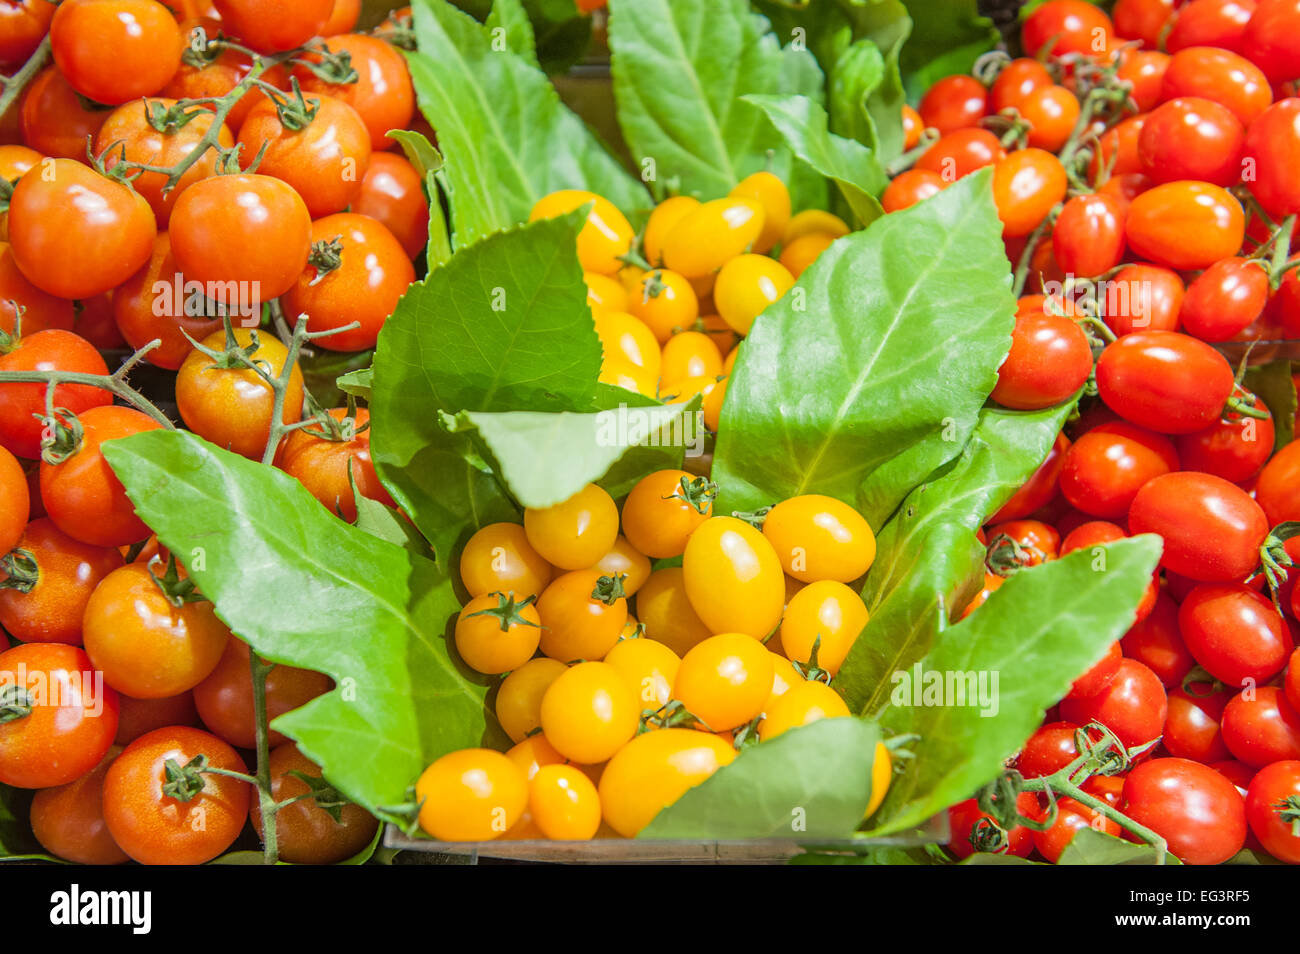 Il giallo e il rosso dei pomodori su un ripiano nel mercato, close up con fuori della messa a fuoco lo sfondo Foto Stock